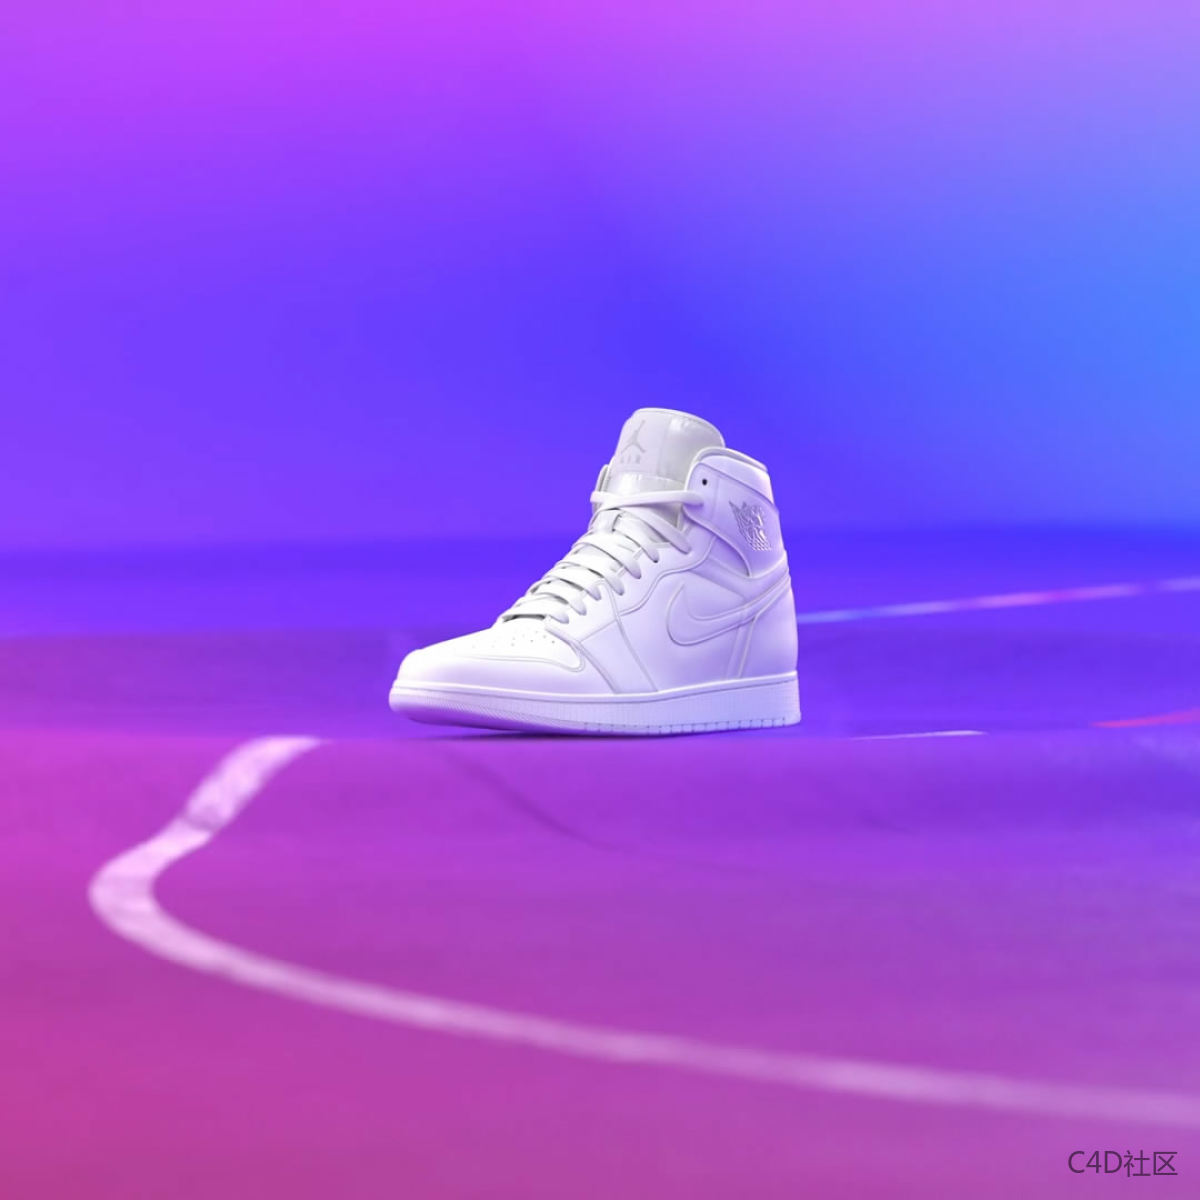 Nike - White Hot on Vimeo